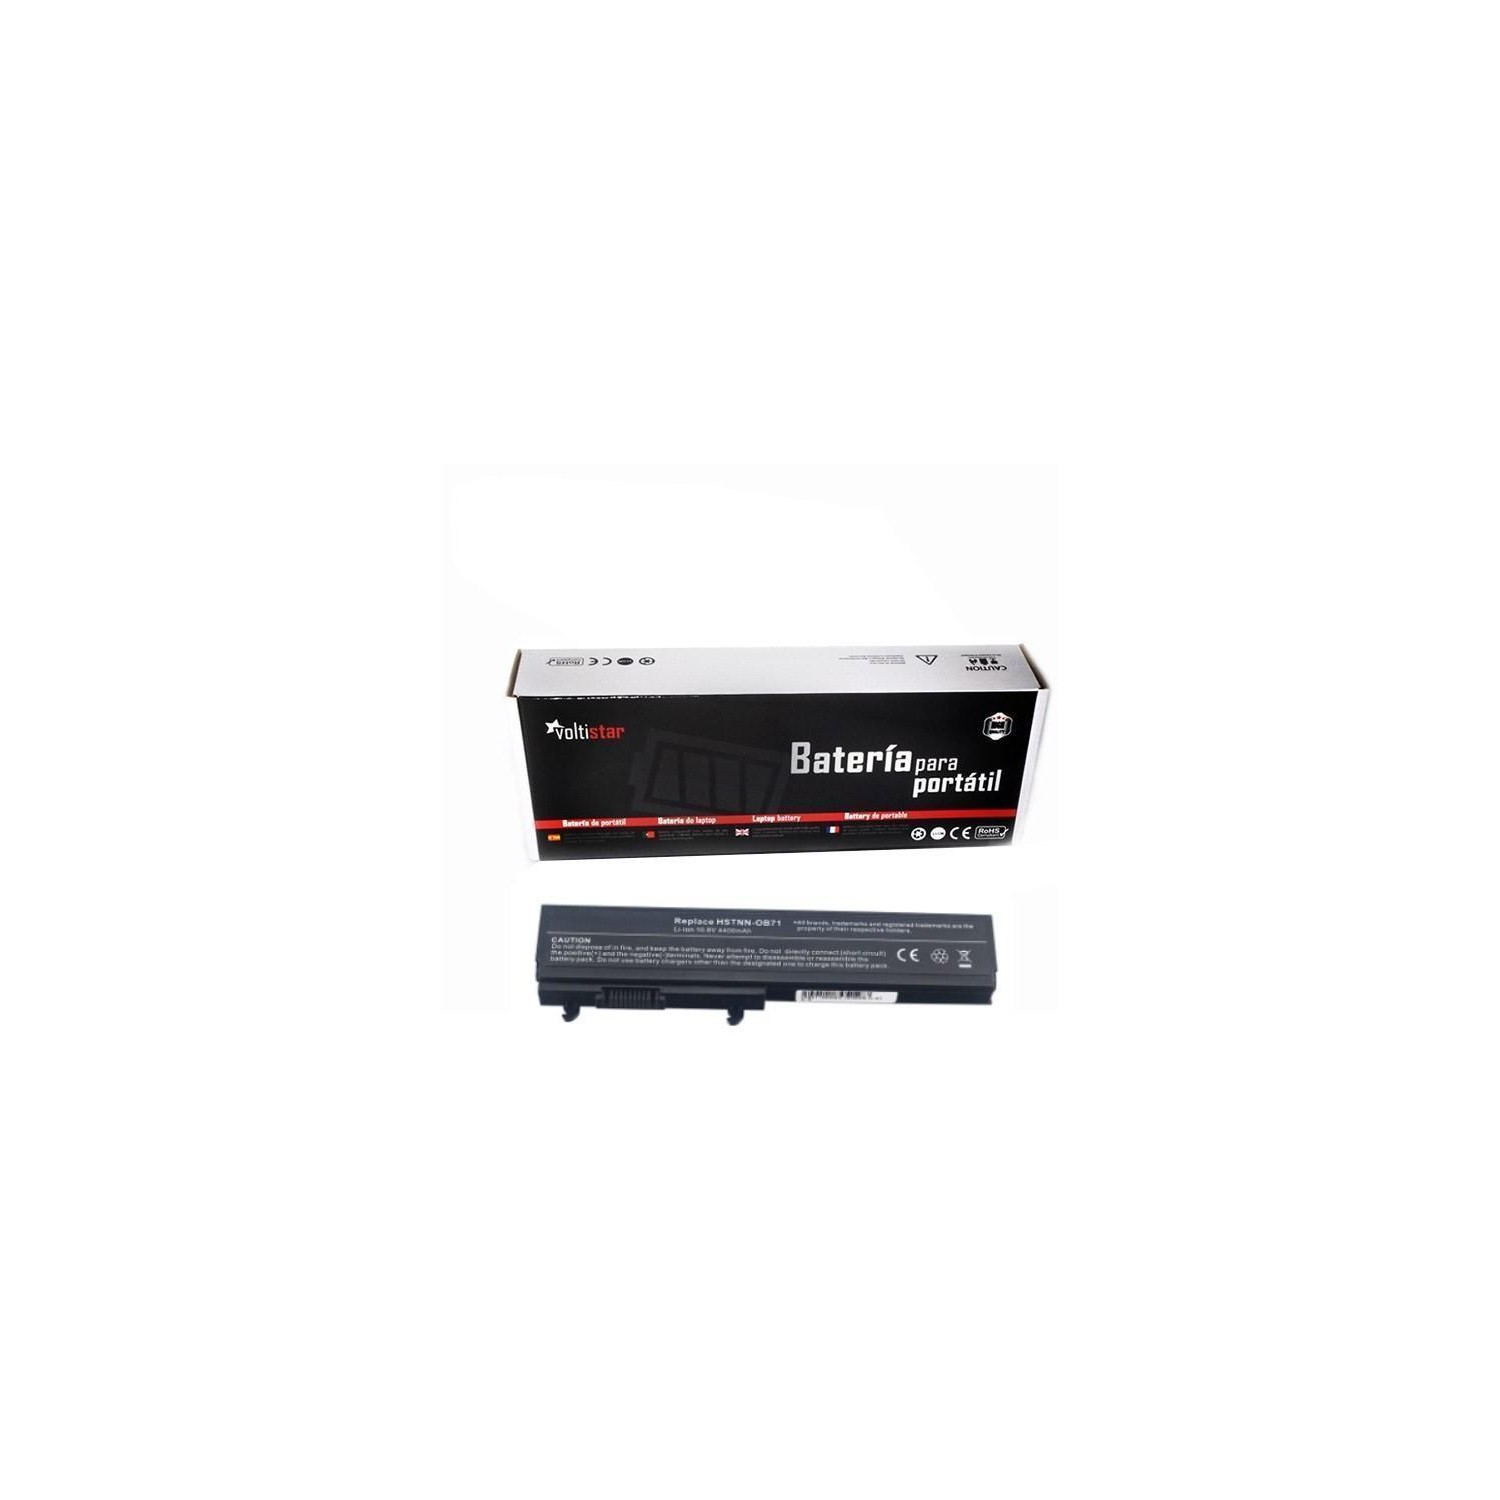 Batería para portátil Hp Pavilion DV3000 Series, 463305-341, HSTNN-CB71